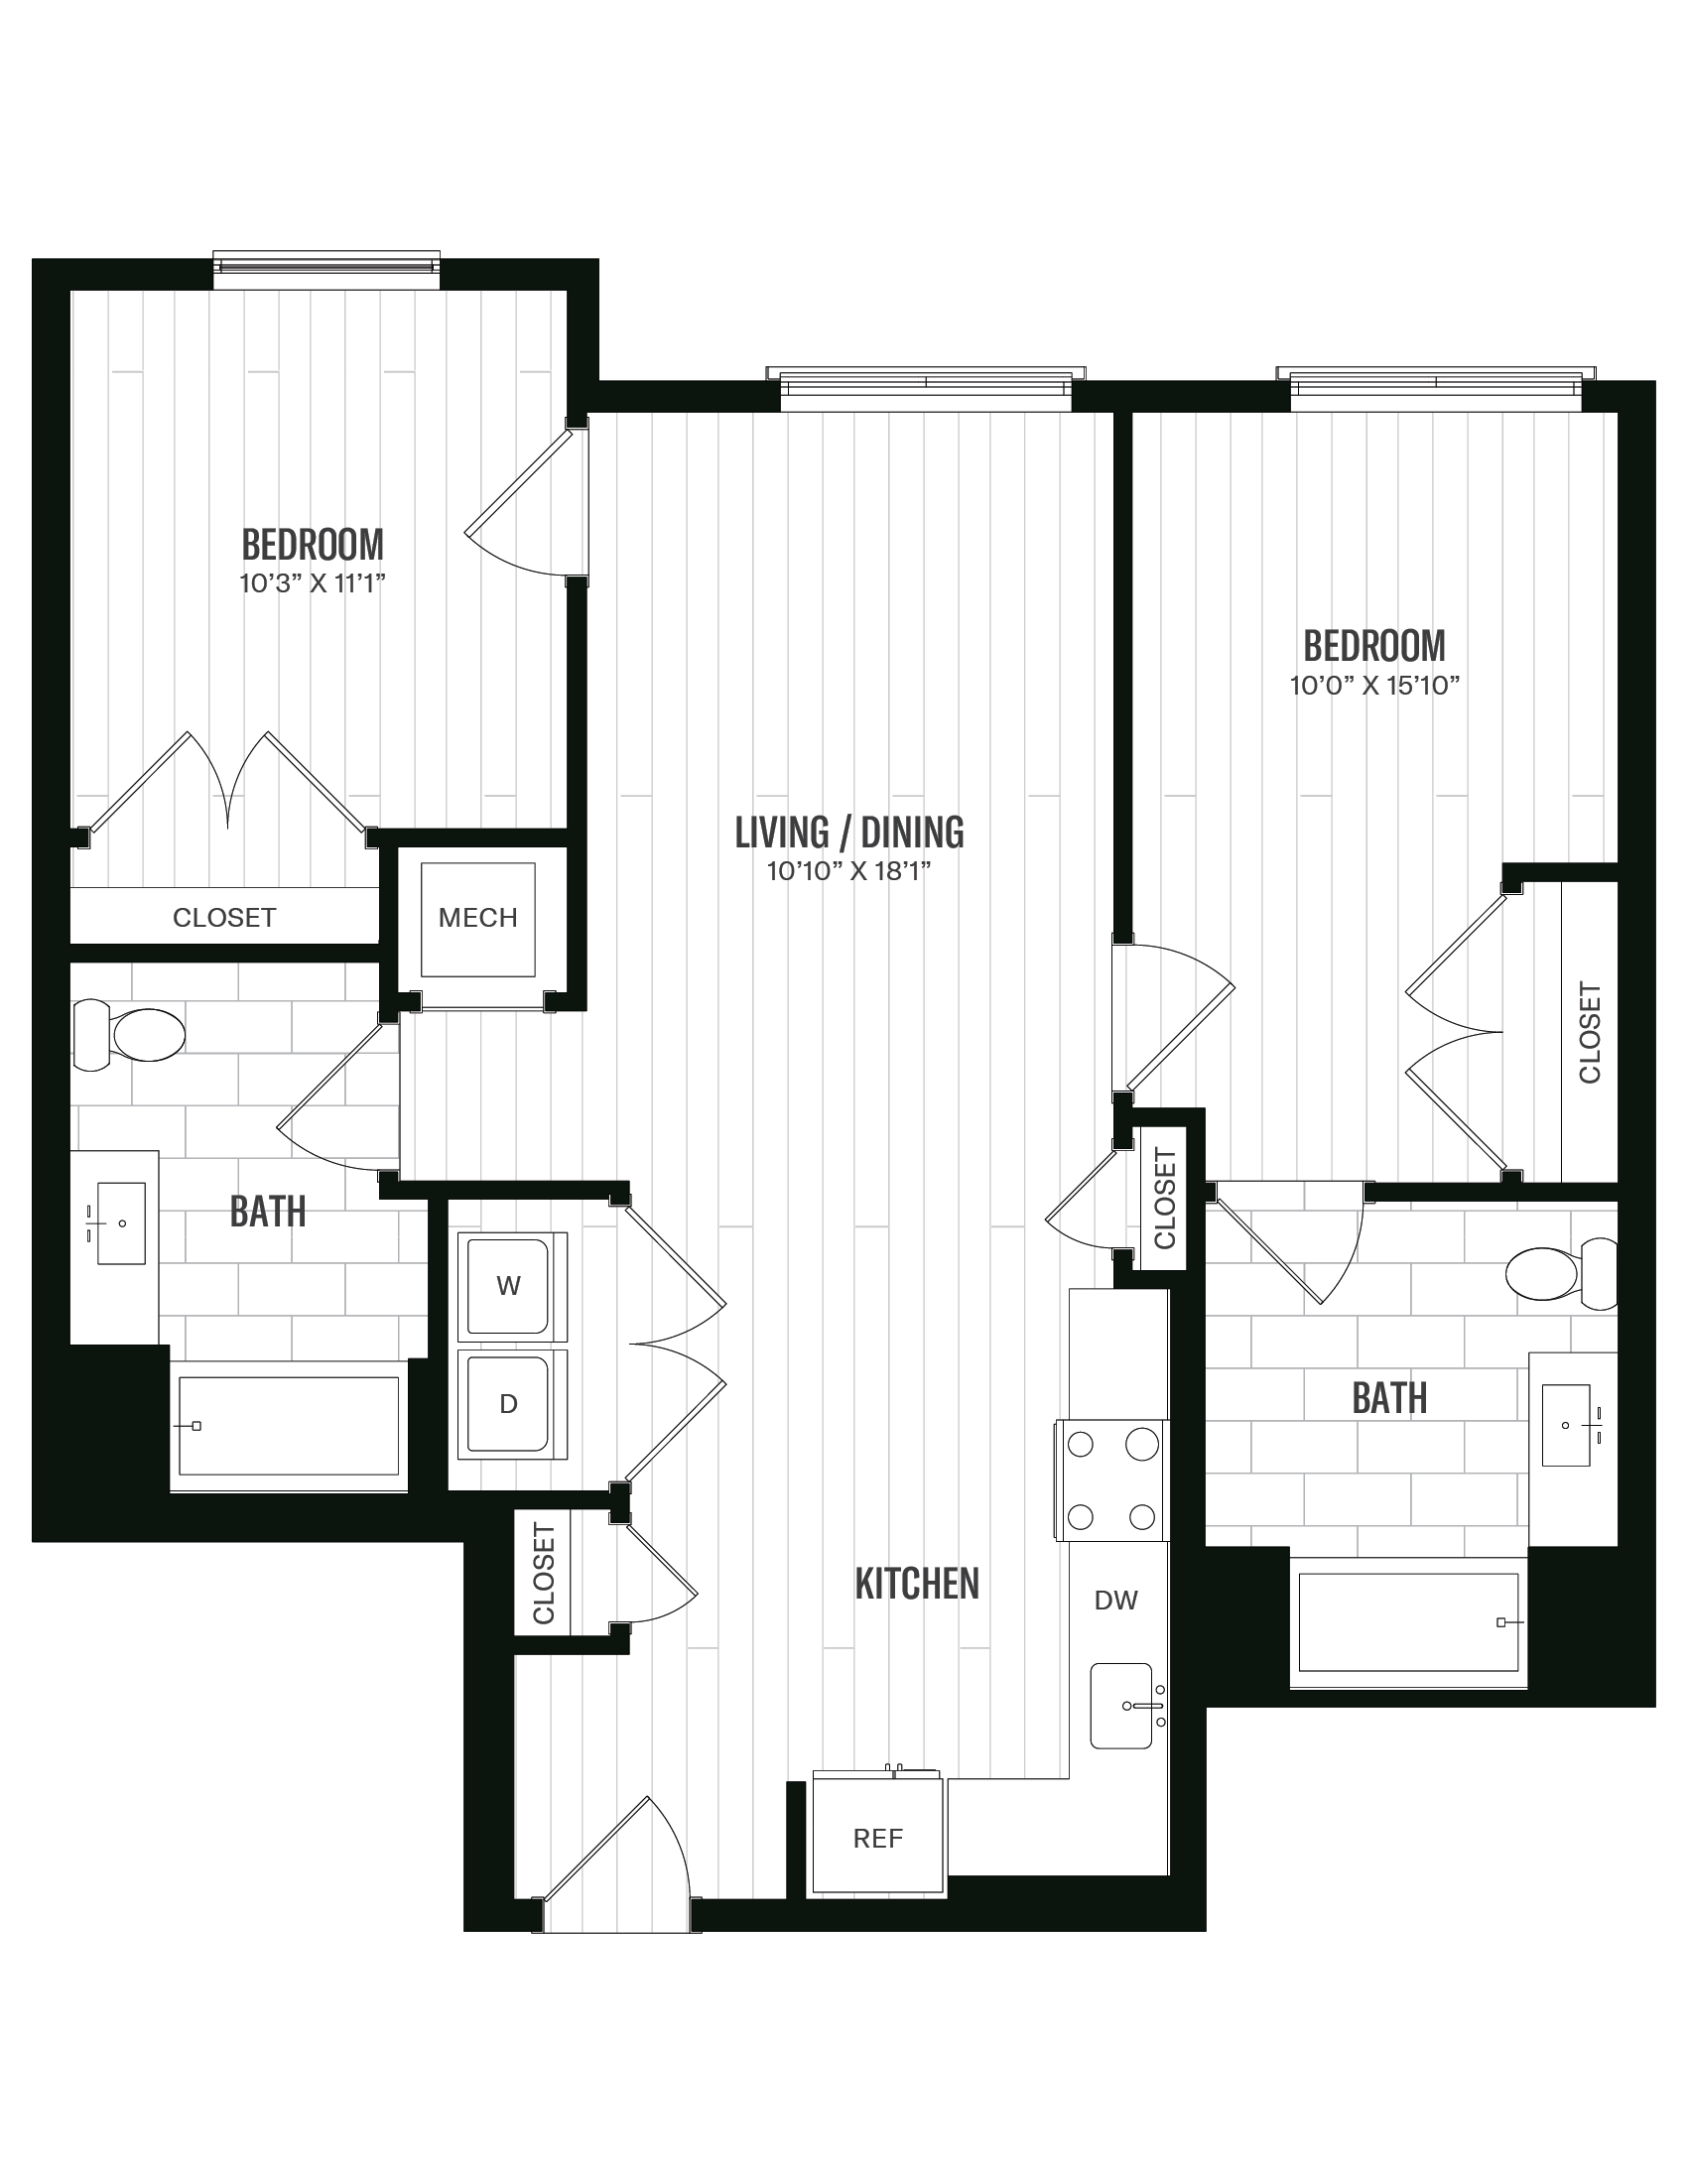 Floorplan image of unit 265